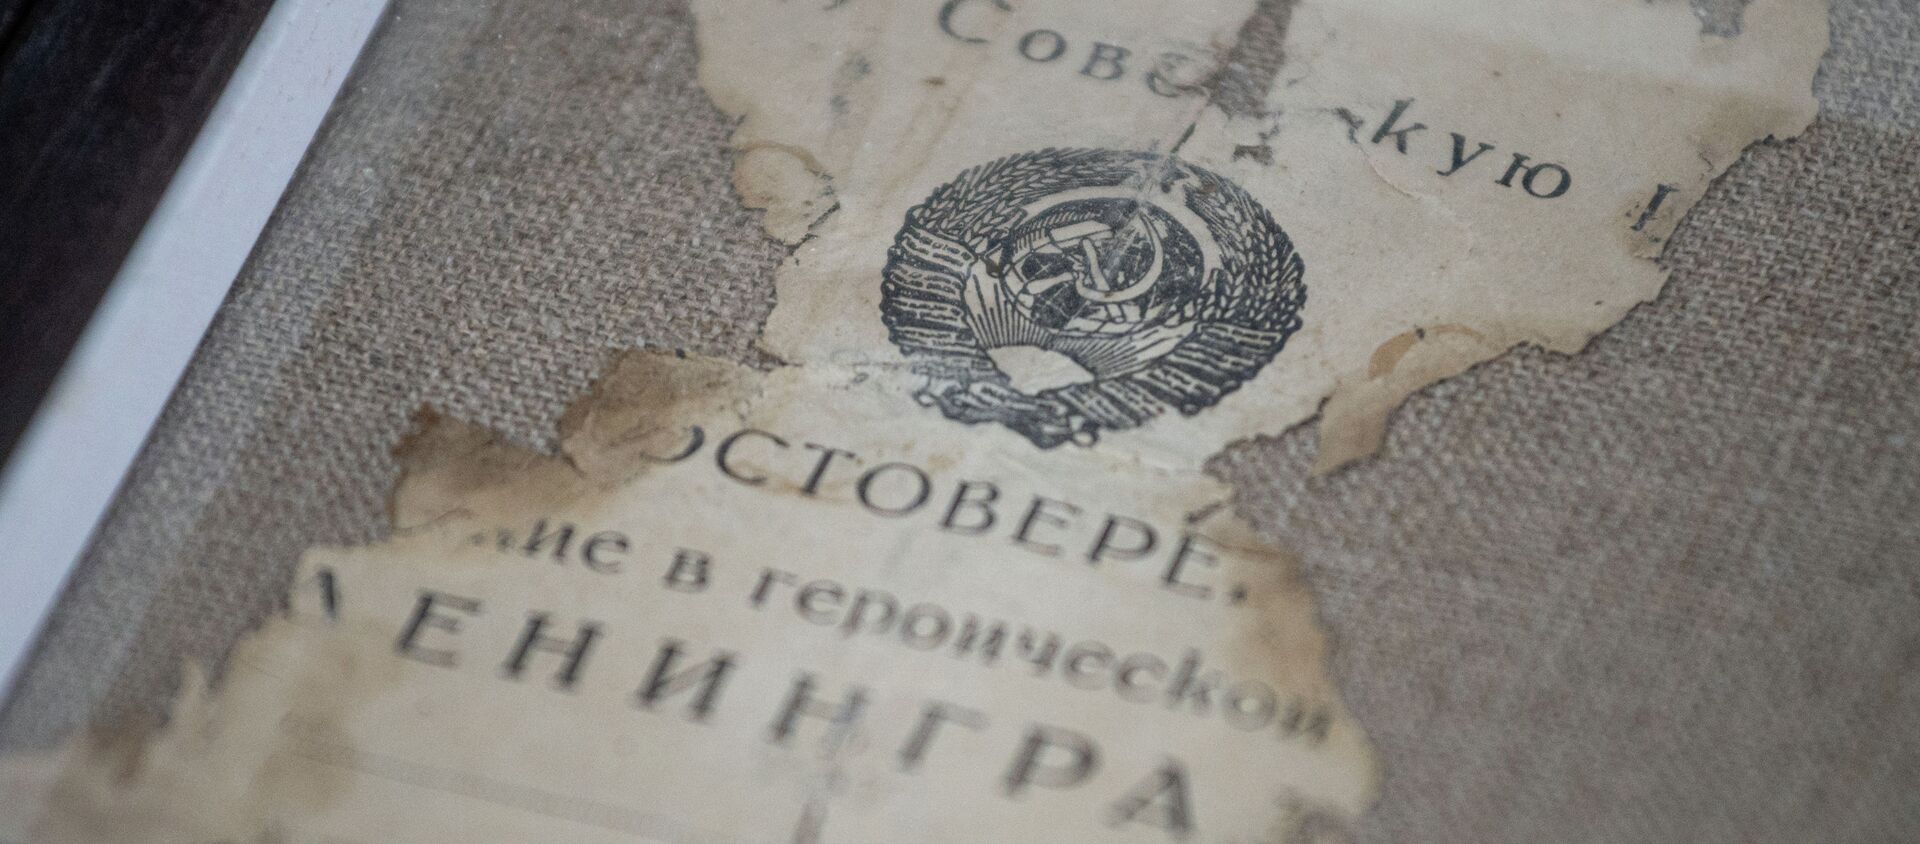 Фрагмент документов, найденных в посмертном медальоне  - Sputnik Казахстан, 1920, 23.03.2021